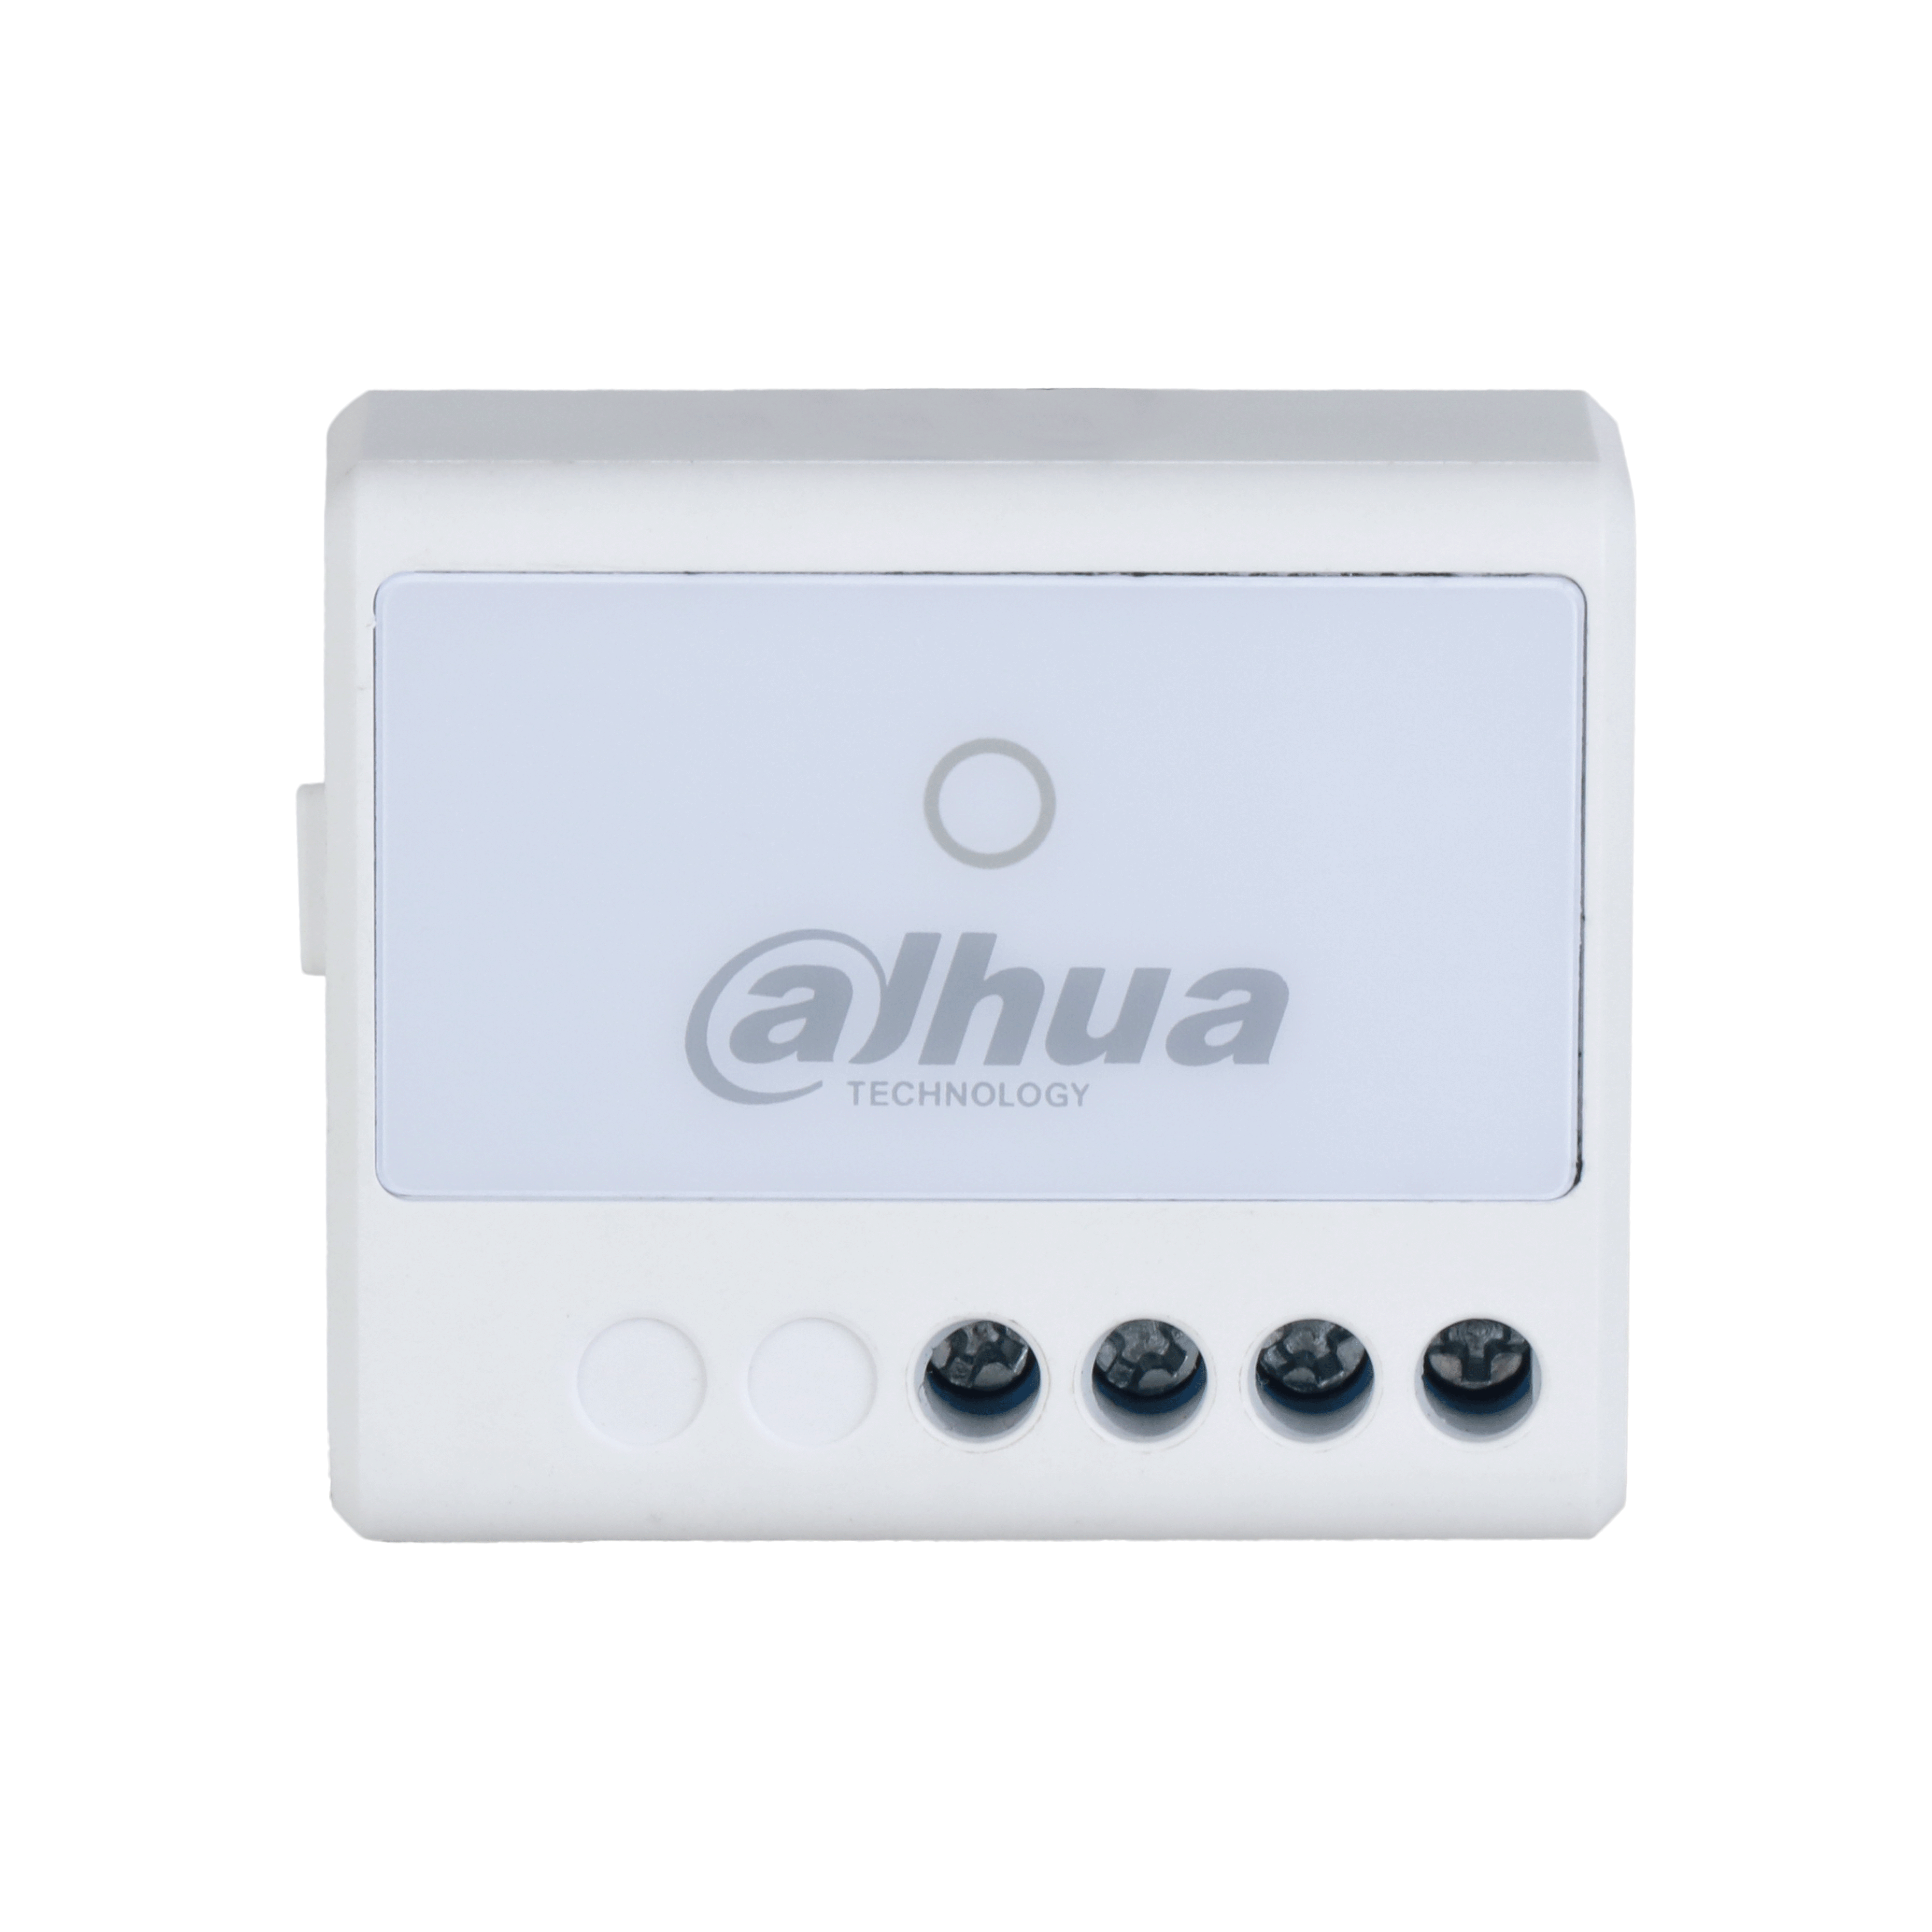 DAHUA ARM7012-W2(868) Dahua Wireless WallSwitch